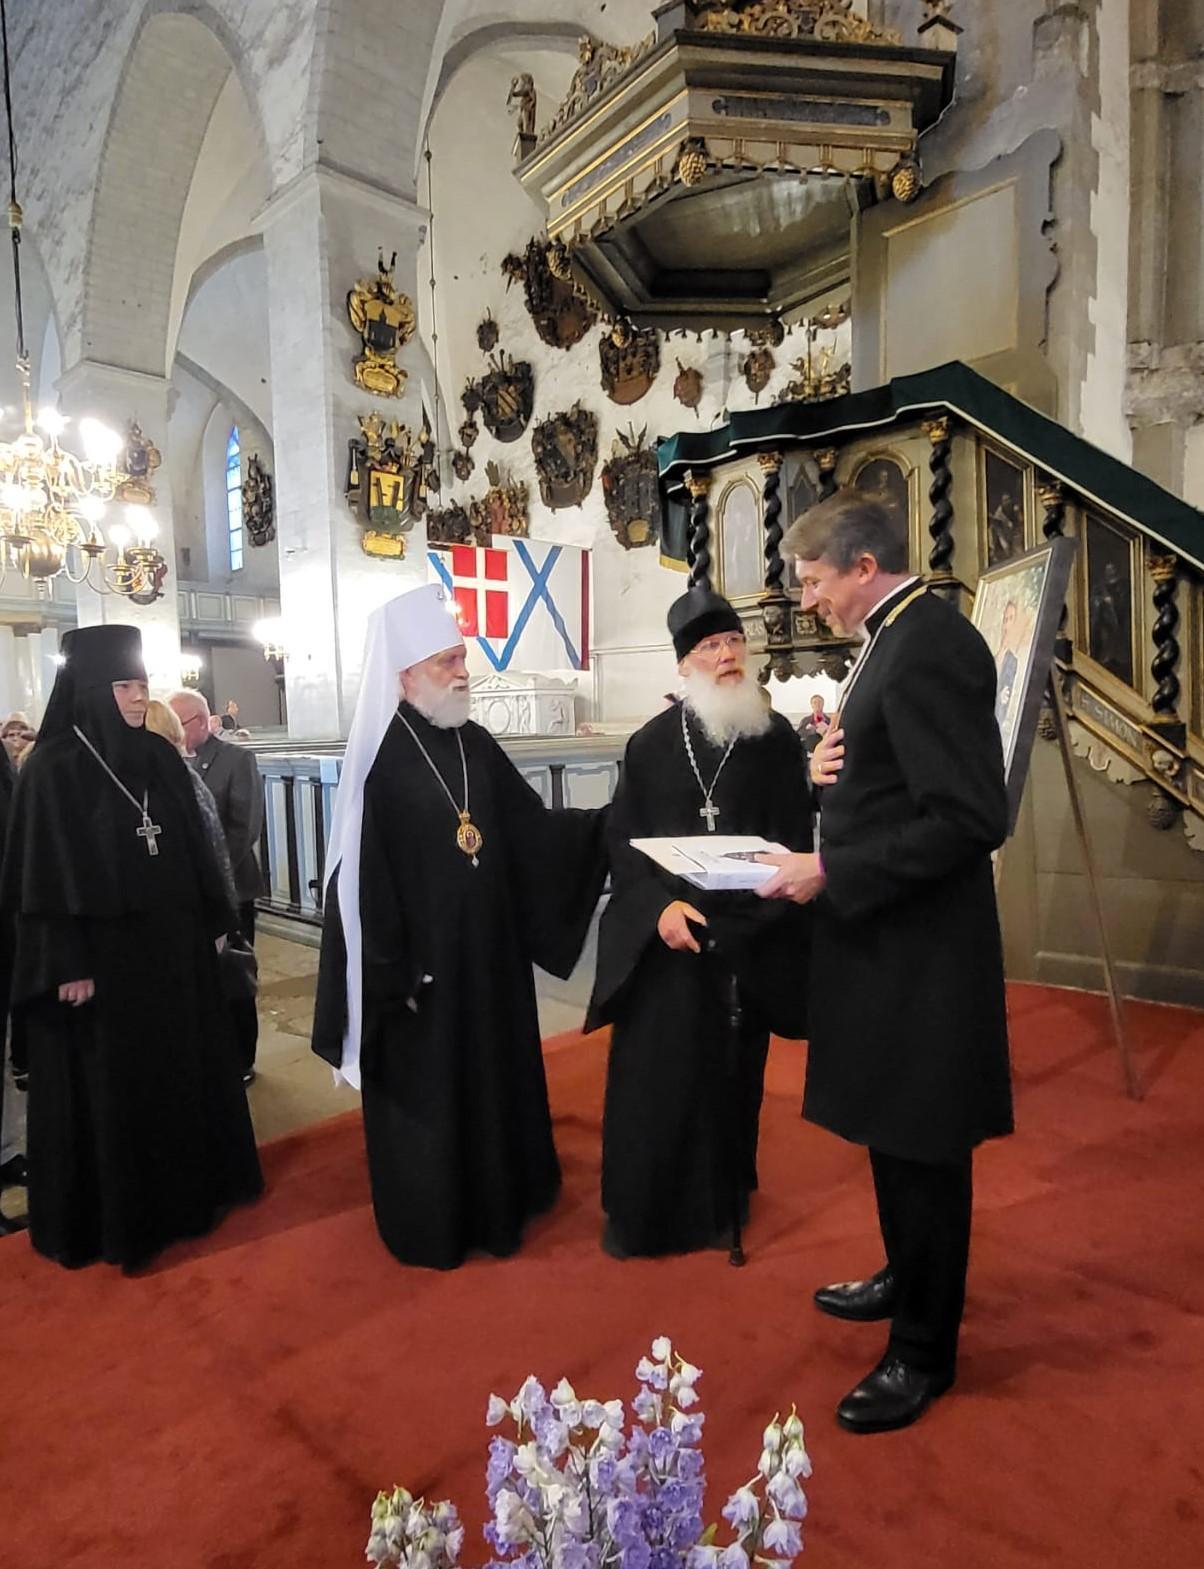 Митрополит Евгений поздравляет архиепископа Урмаса Вийльма. Фото: Михкель Марипуу